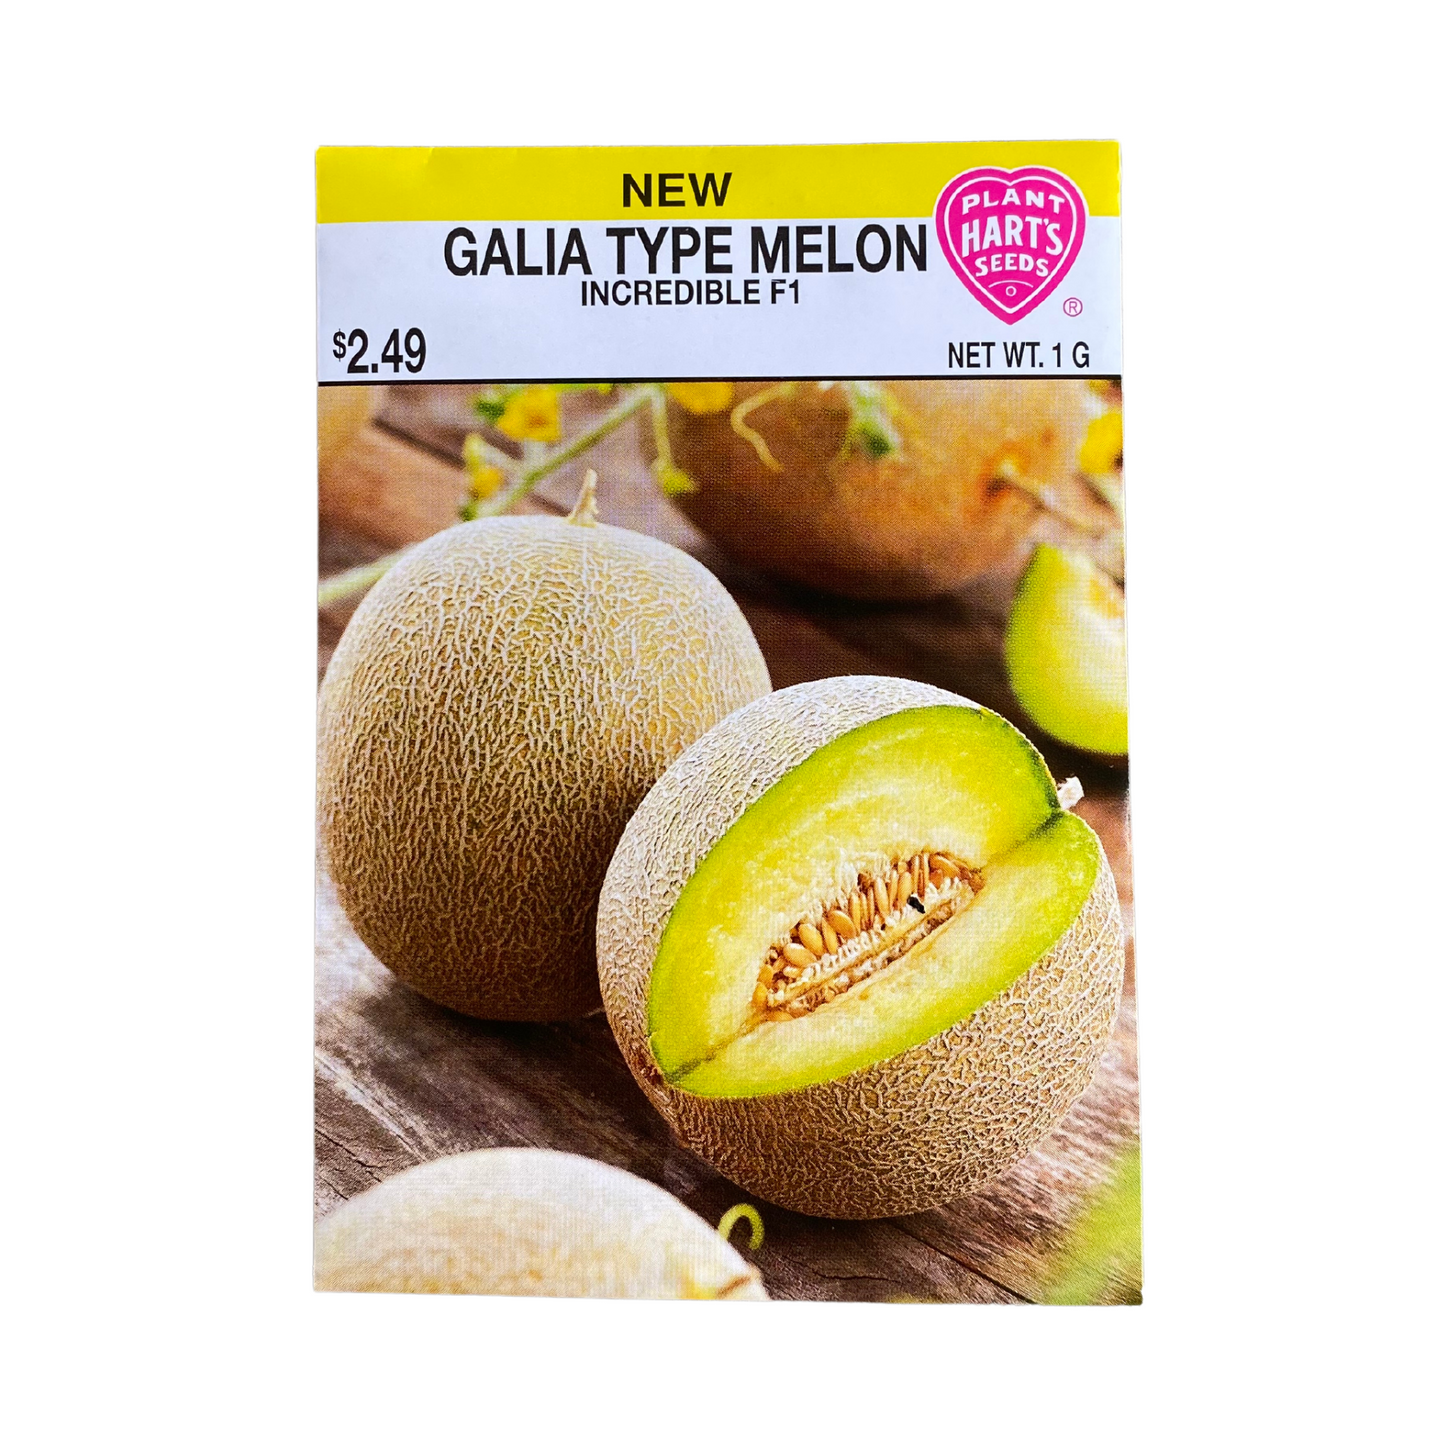 Melon Galia Incredible